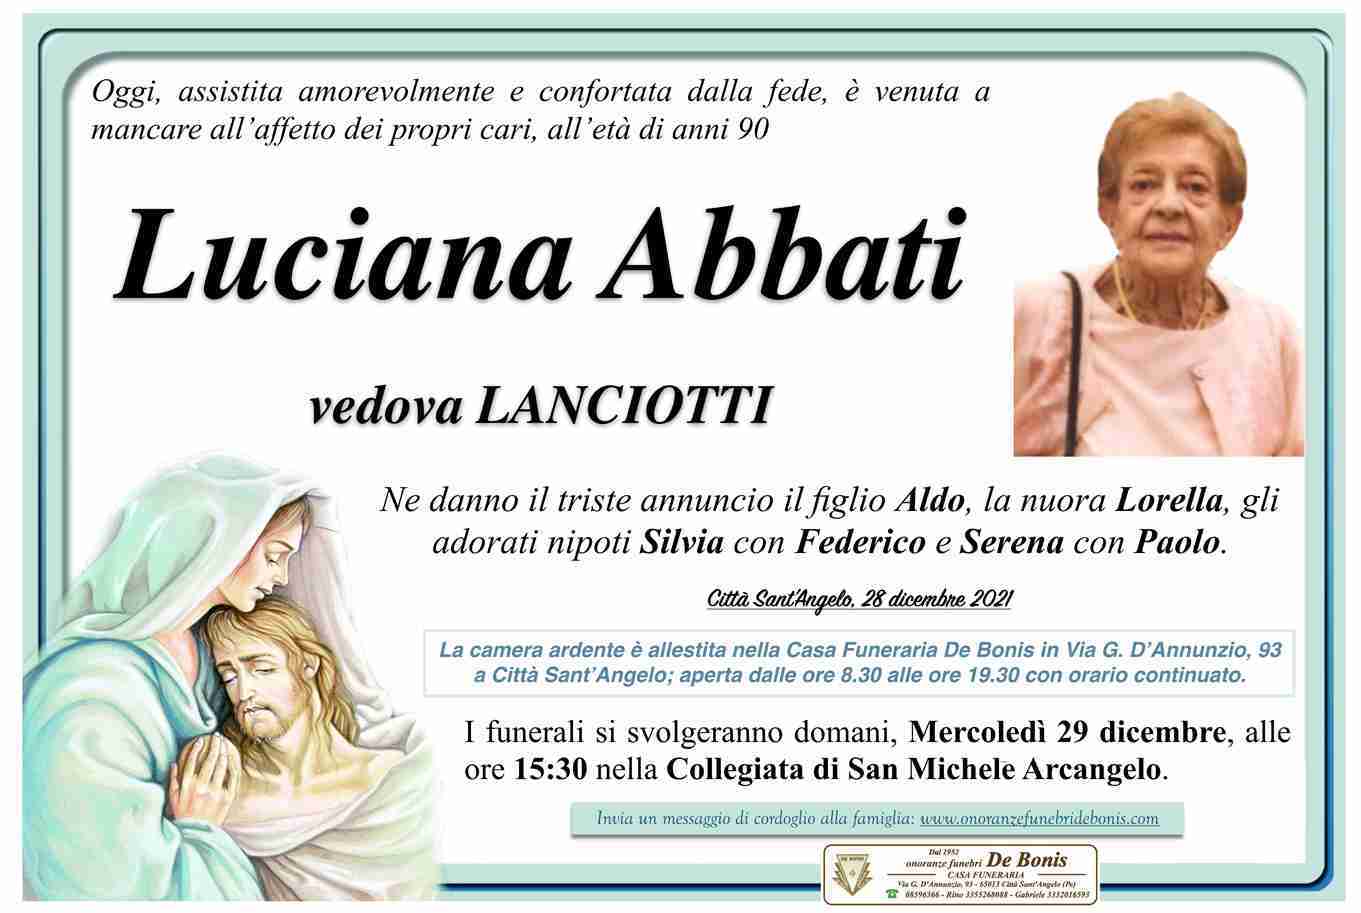 Luciana Abbati